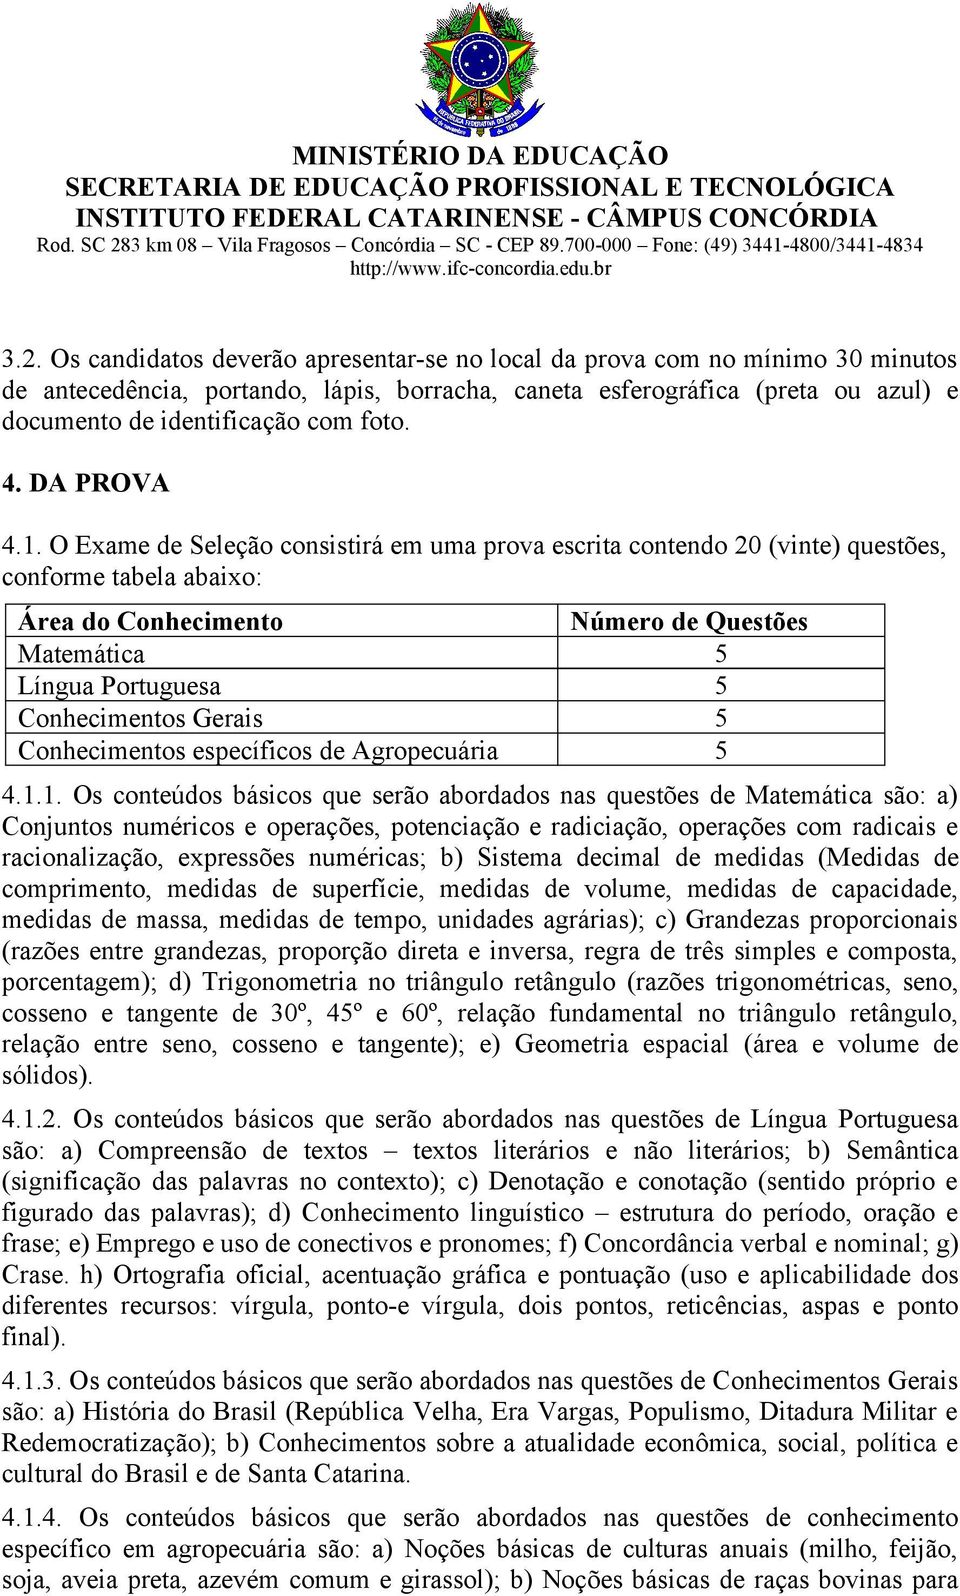 O Exame de Seleção consistirá em uma prova escrita contendo 20 (vinte) questões, conforme tabela abaixo: Área do Conhecimento Número de Questões Matemática 5 Língua Portuguesa 5 Conhecimentos Gerais